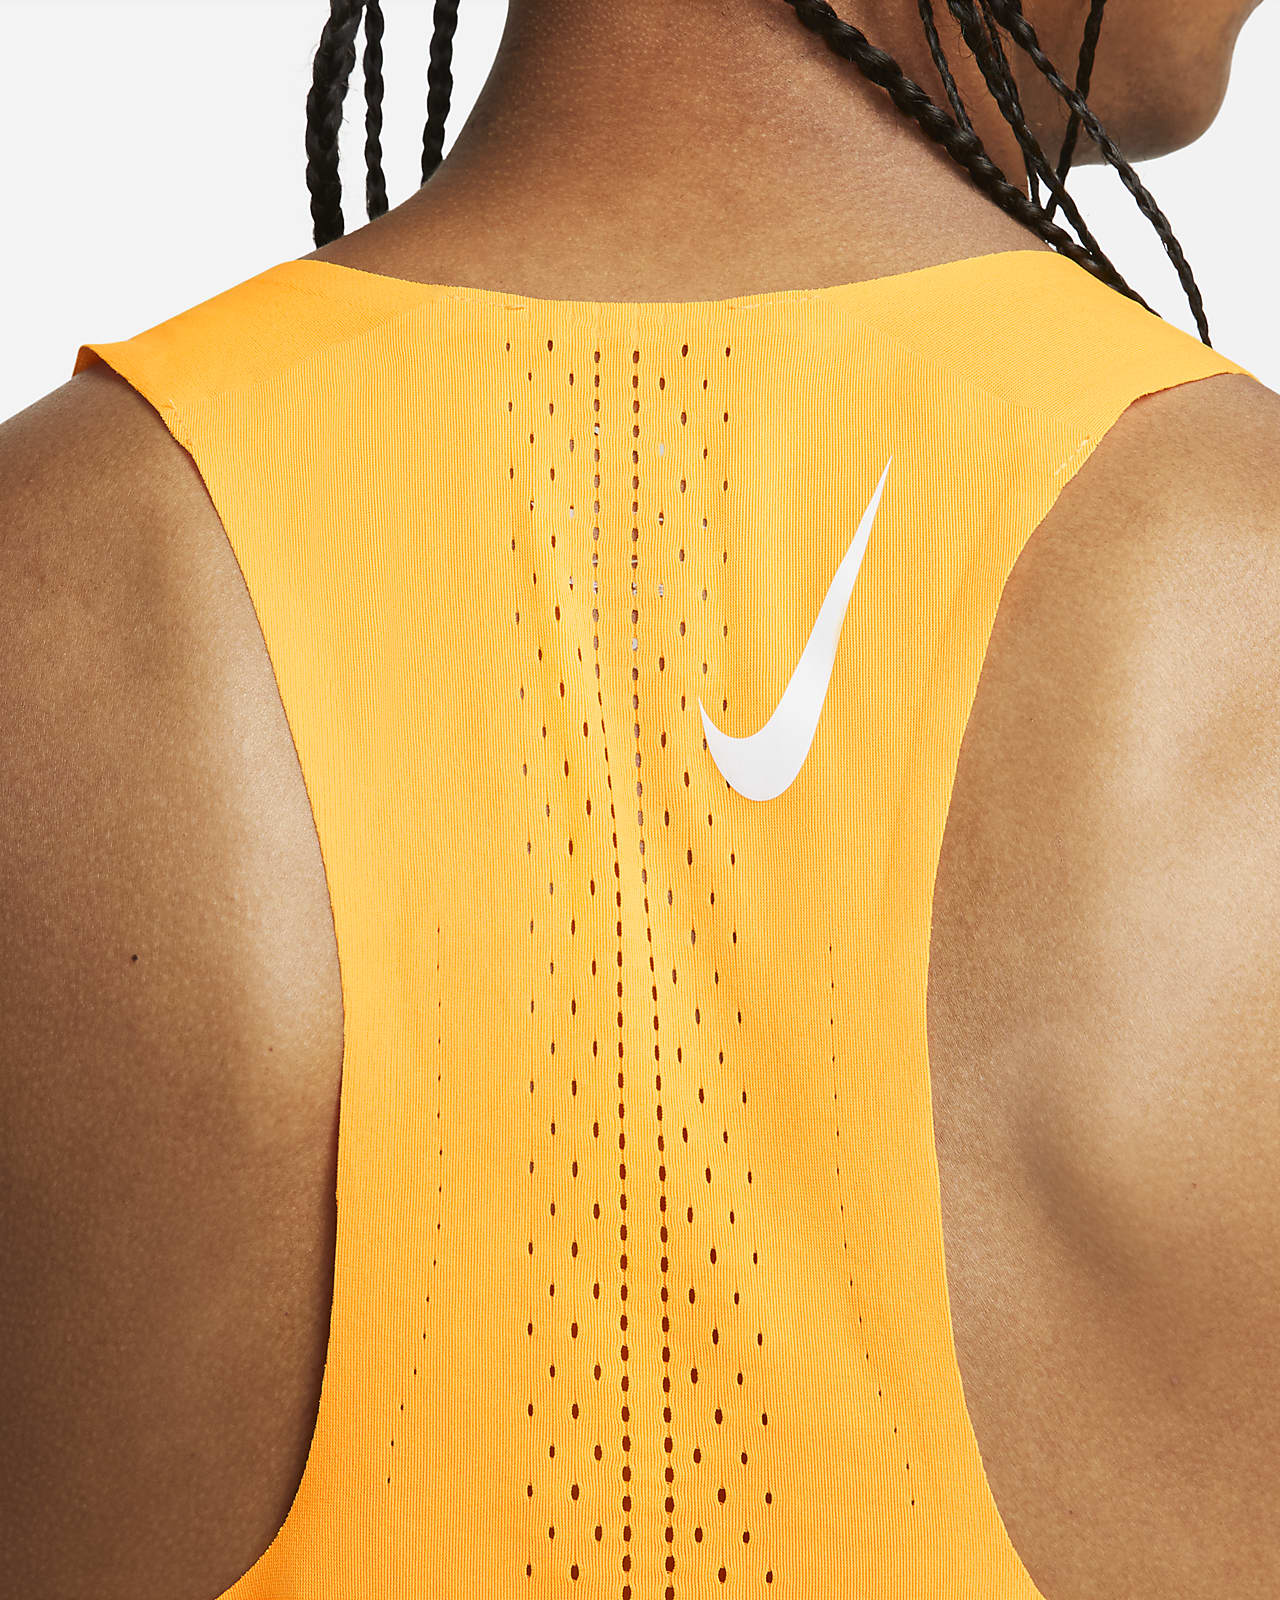 Nike Dri-FIT Camiseta de running para competición - Hombre. Nike ES